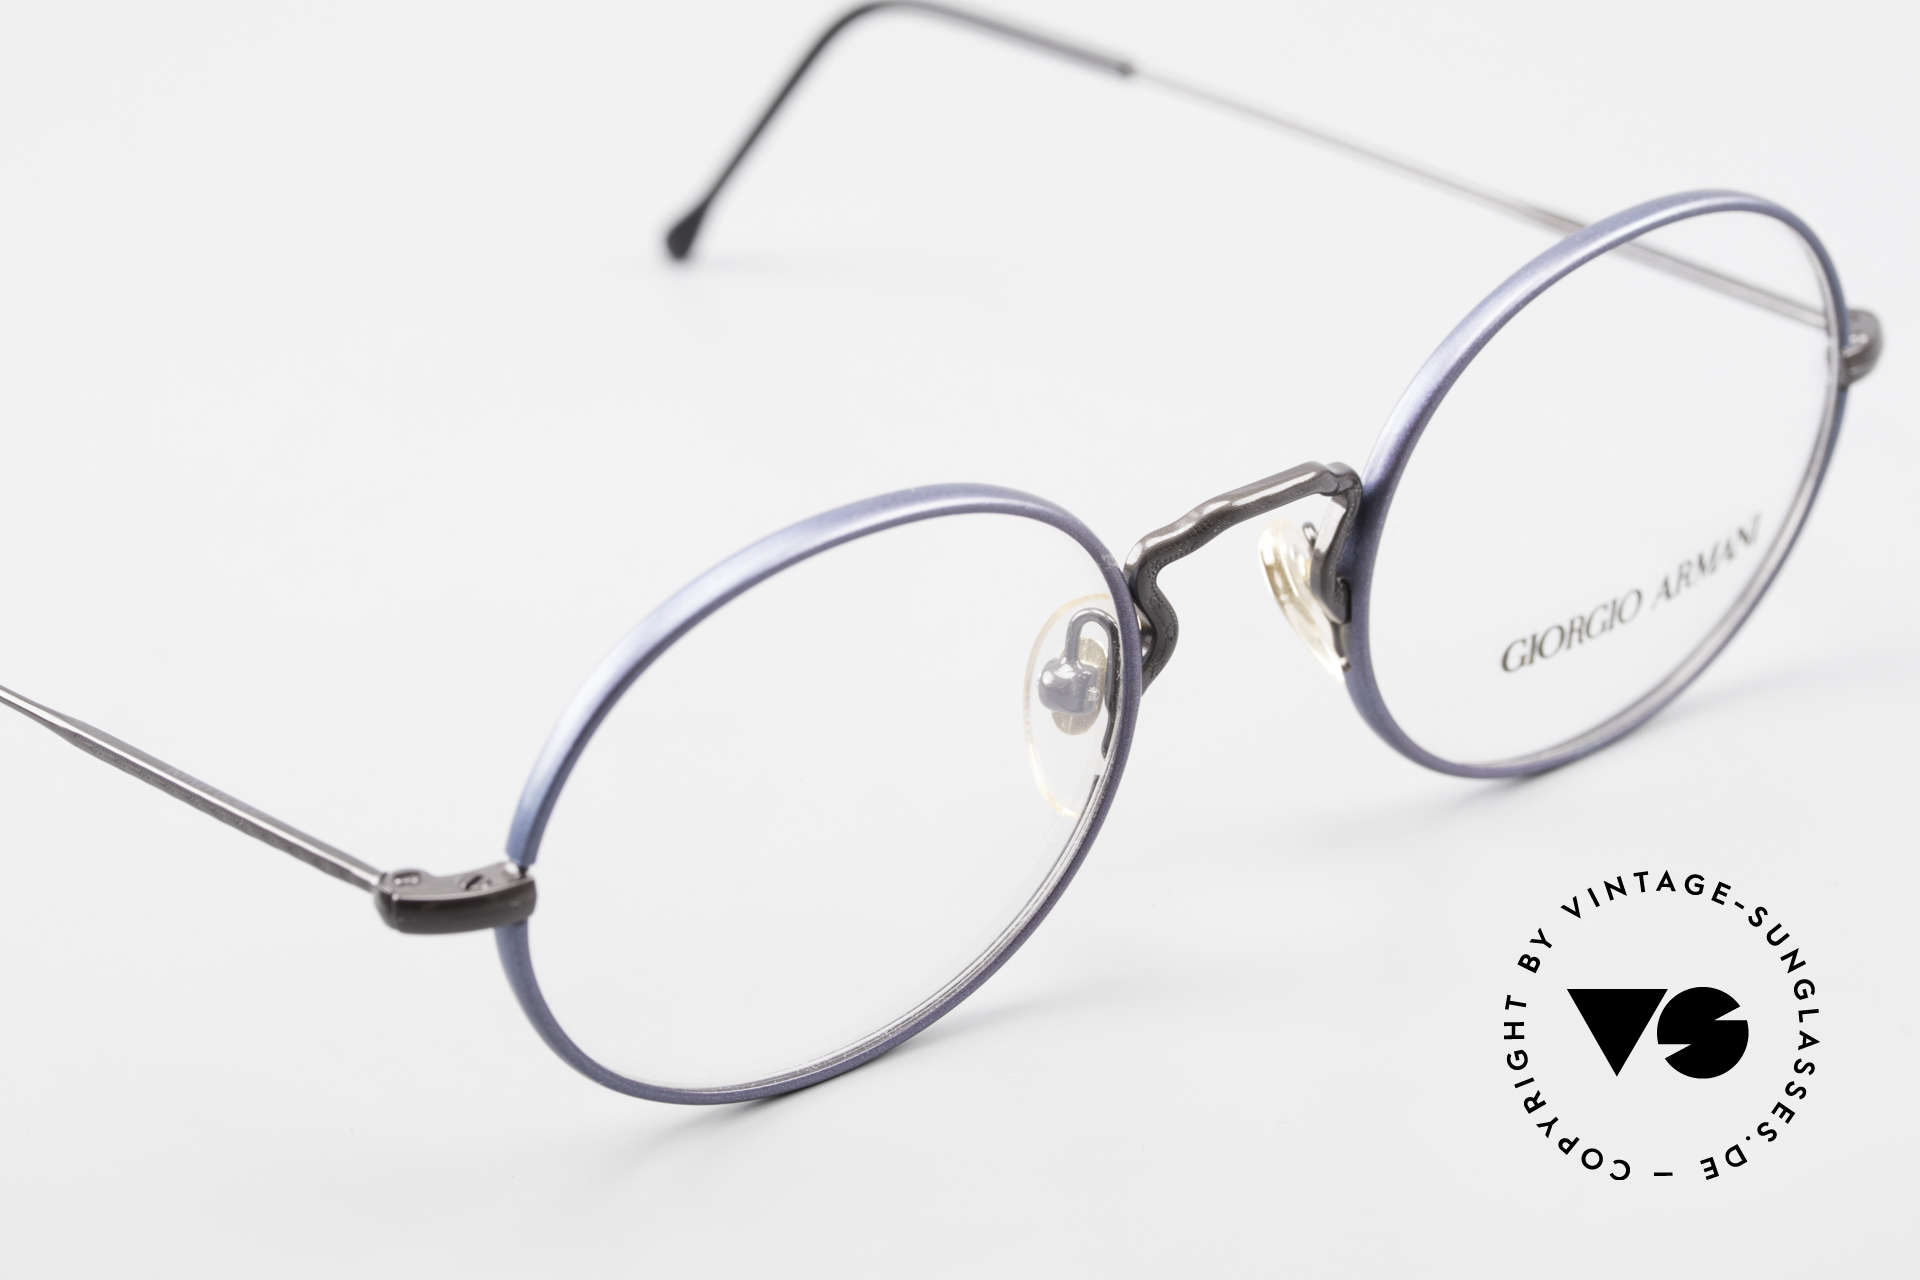 Giorgio Armani 247 No Retro Eyeglasses 90's Oval, NO RETRO SPECS, but an app. 25 years old Original, Made for Men and Women